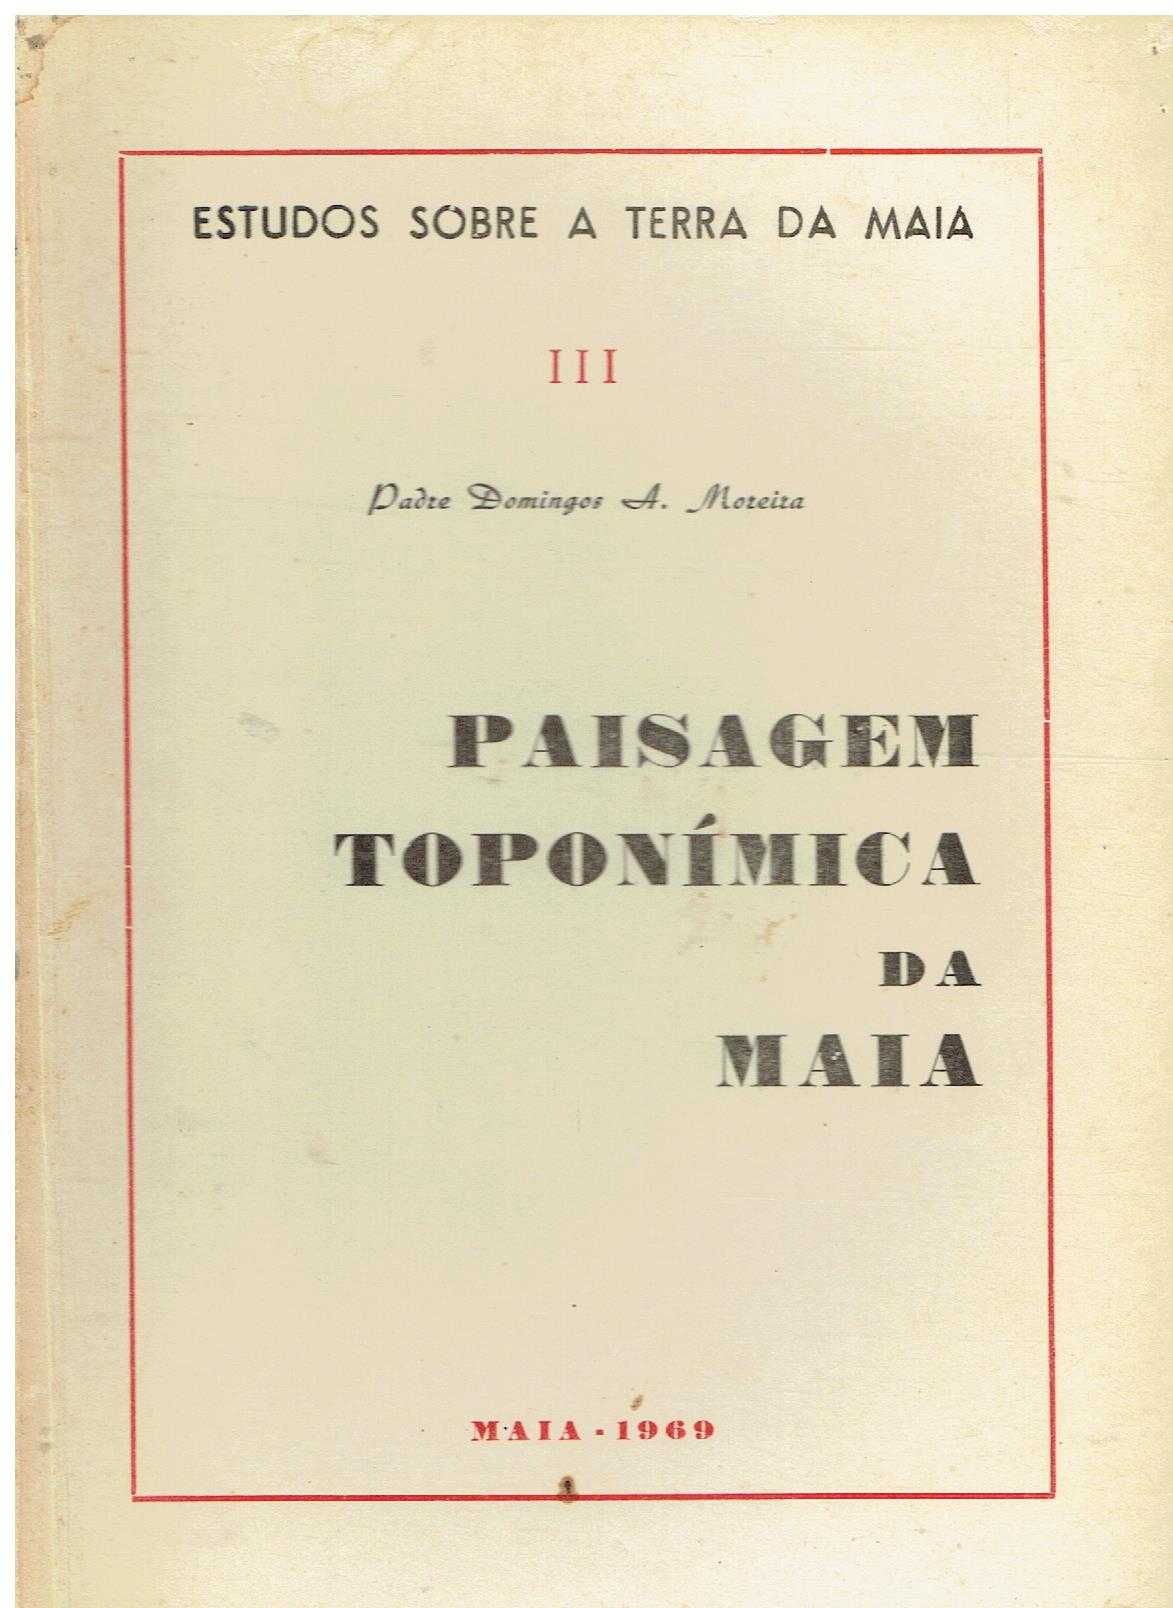 8956

Paisagem Toponímica da Maia
por Pe. Domingos A. Moreira